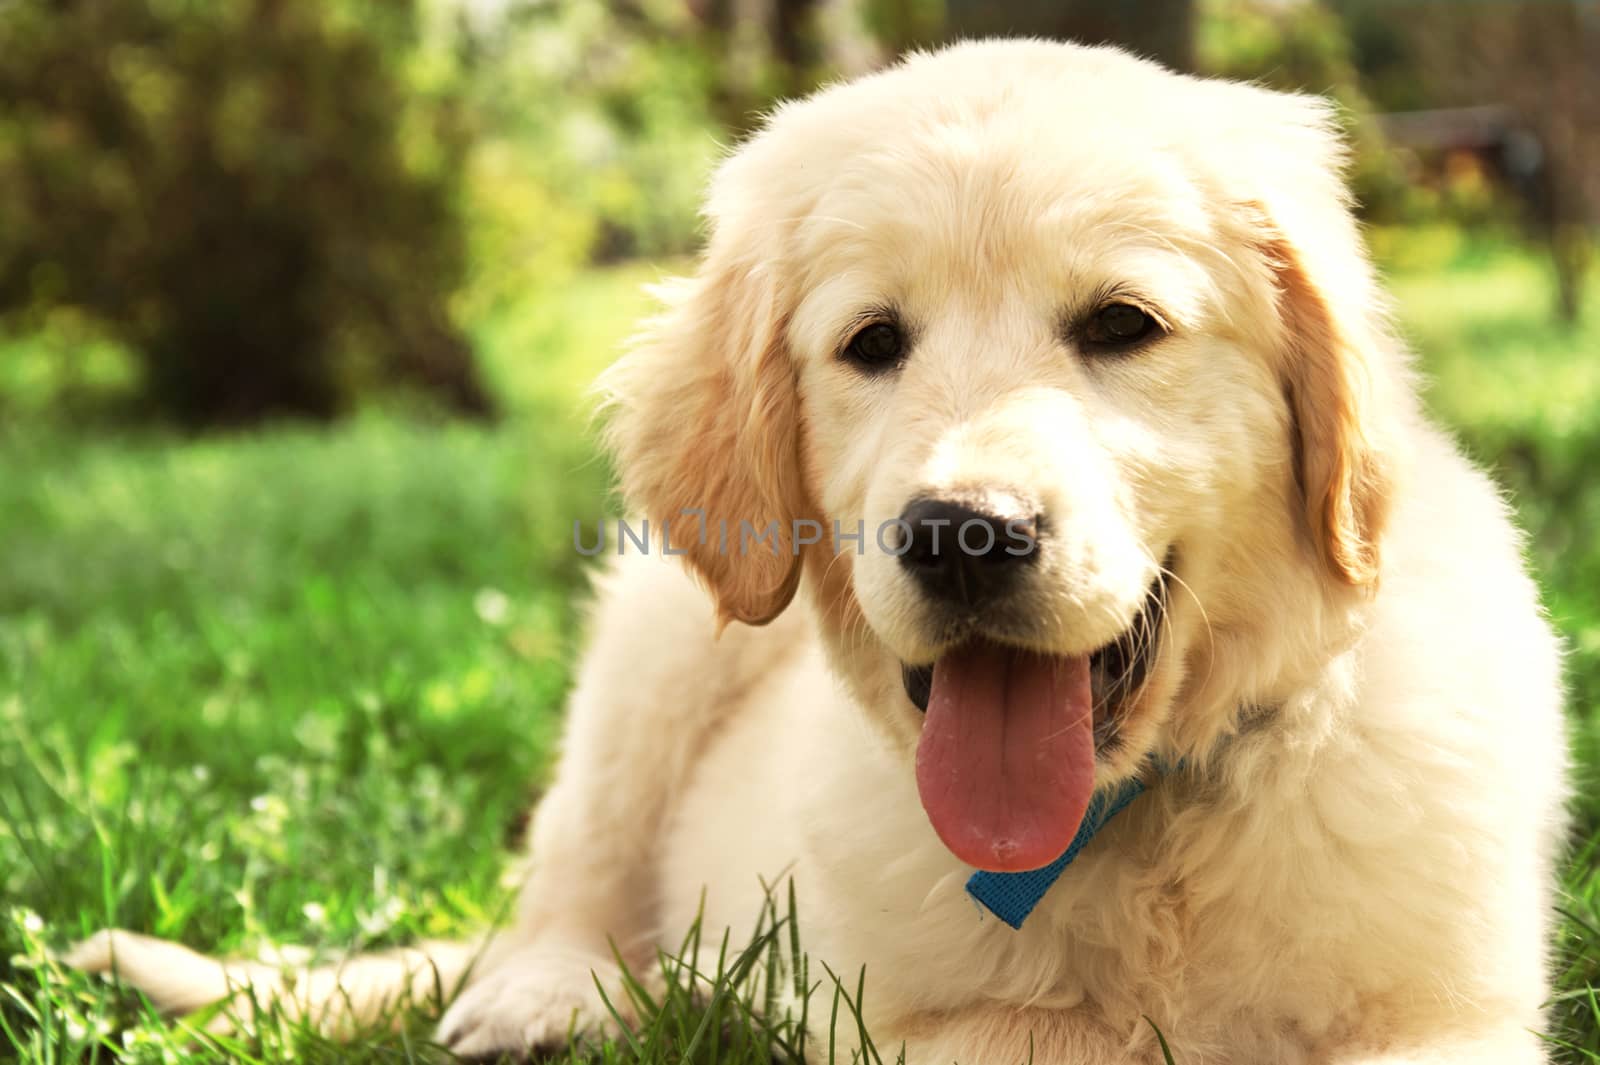 Cute golden retriever puppy lying on grass